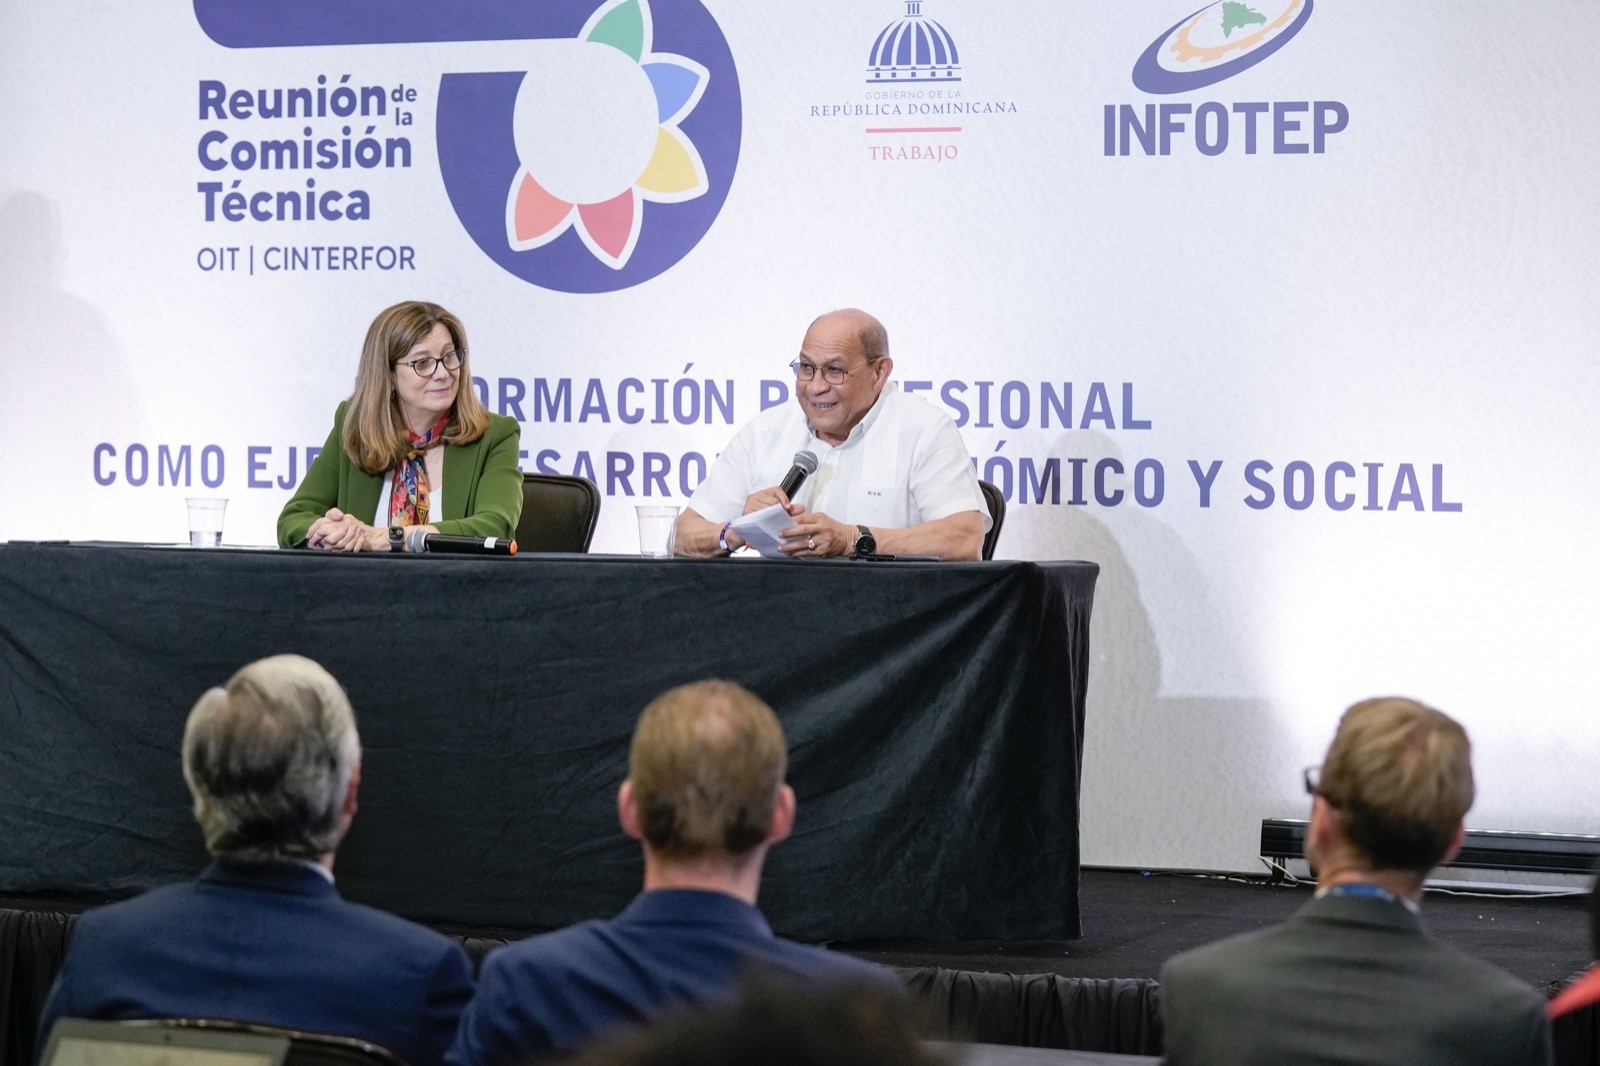 Director general del INFOTEP afirma es un alto honor la celebración de reunión técnica de OIT/Cinterfor en República Dominicana